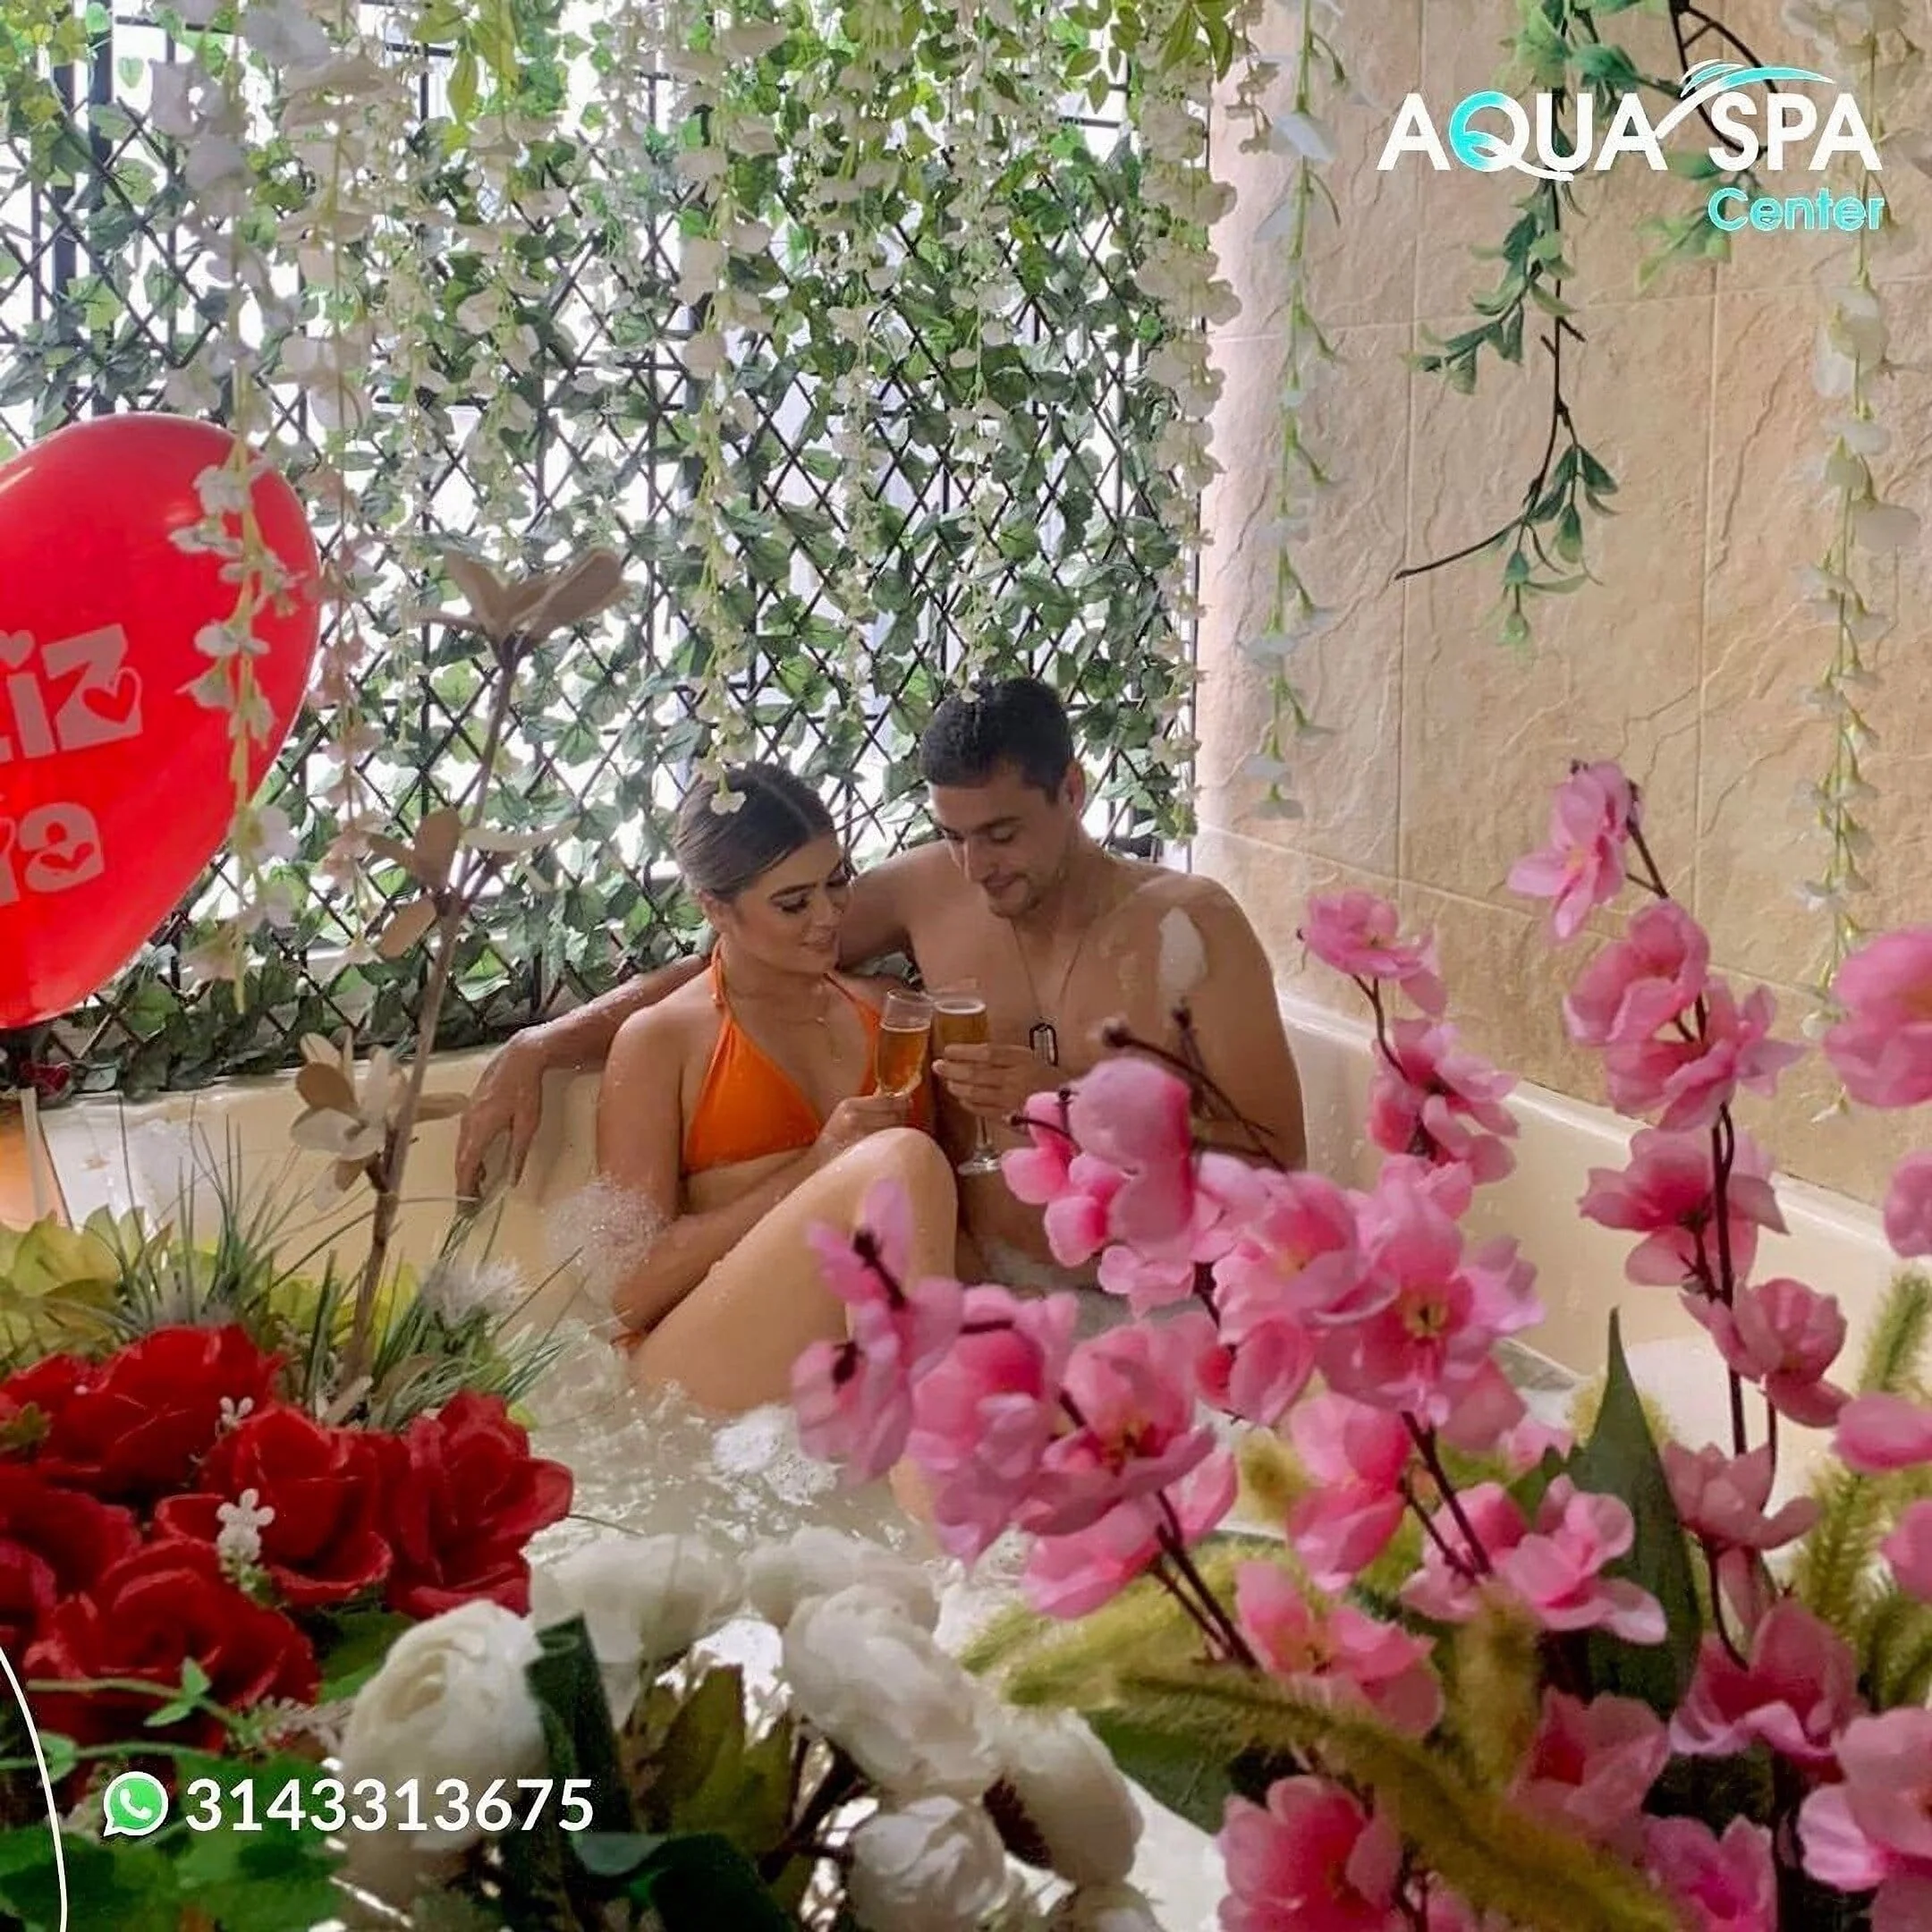 Spa-aqua-spa-center-8687